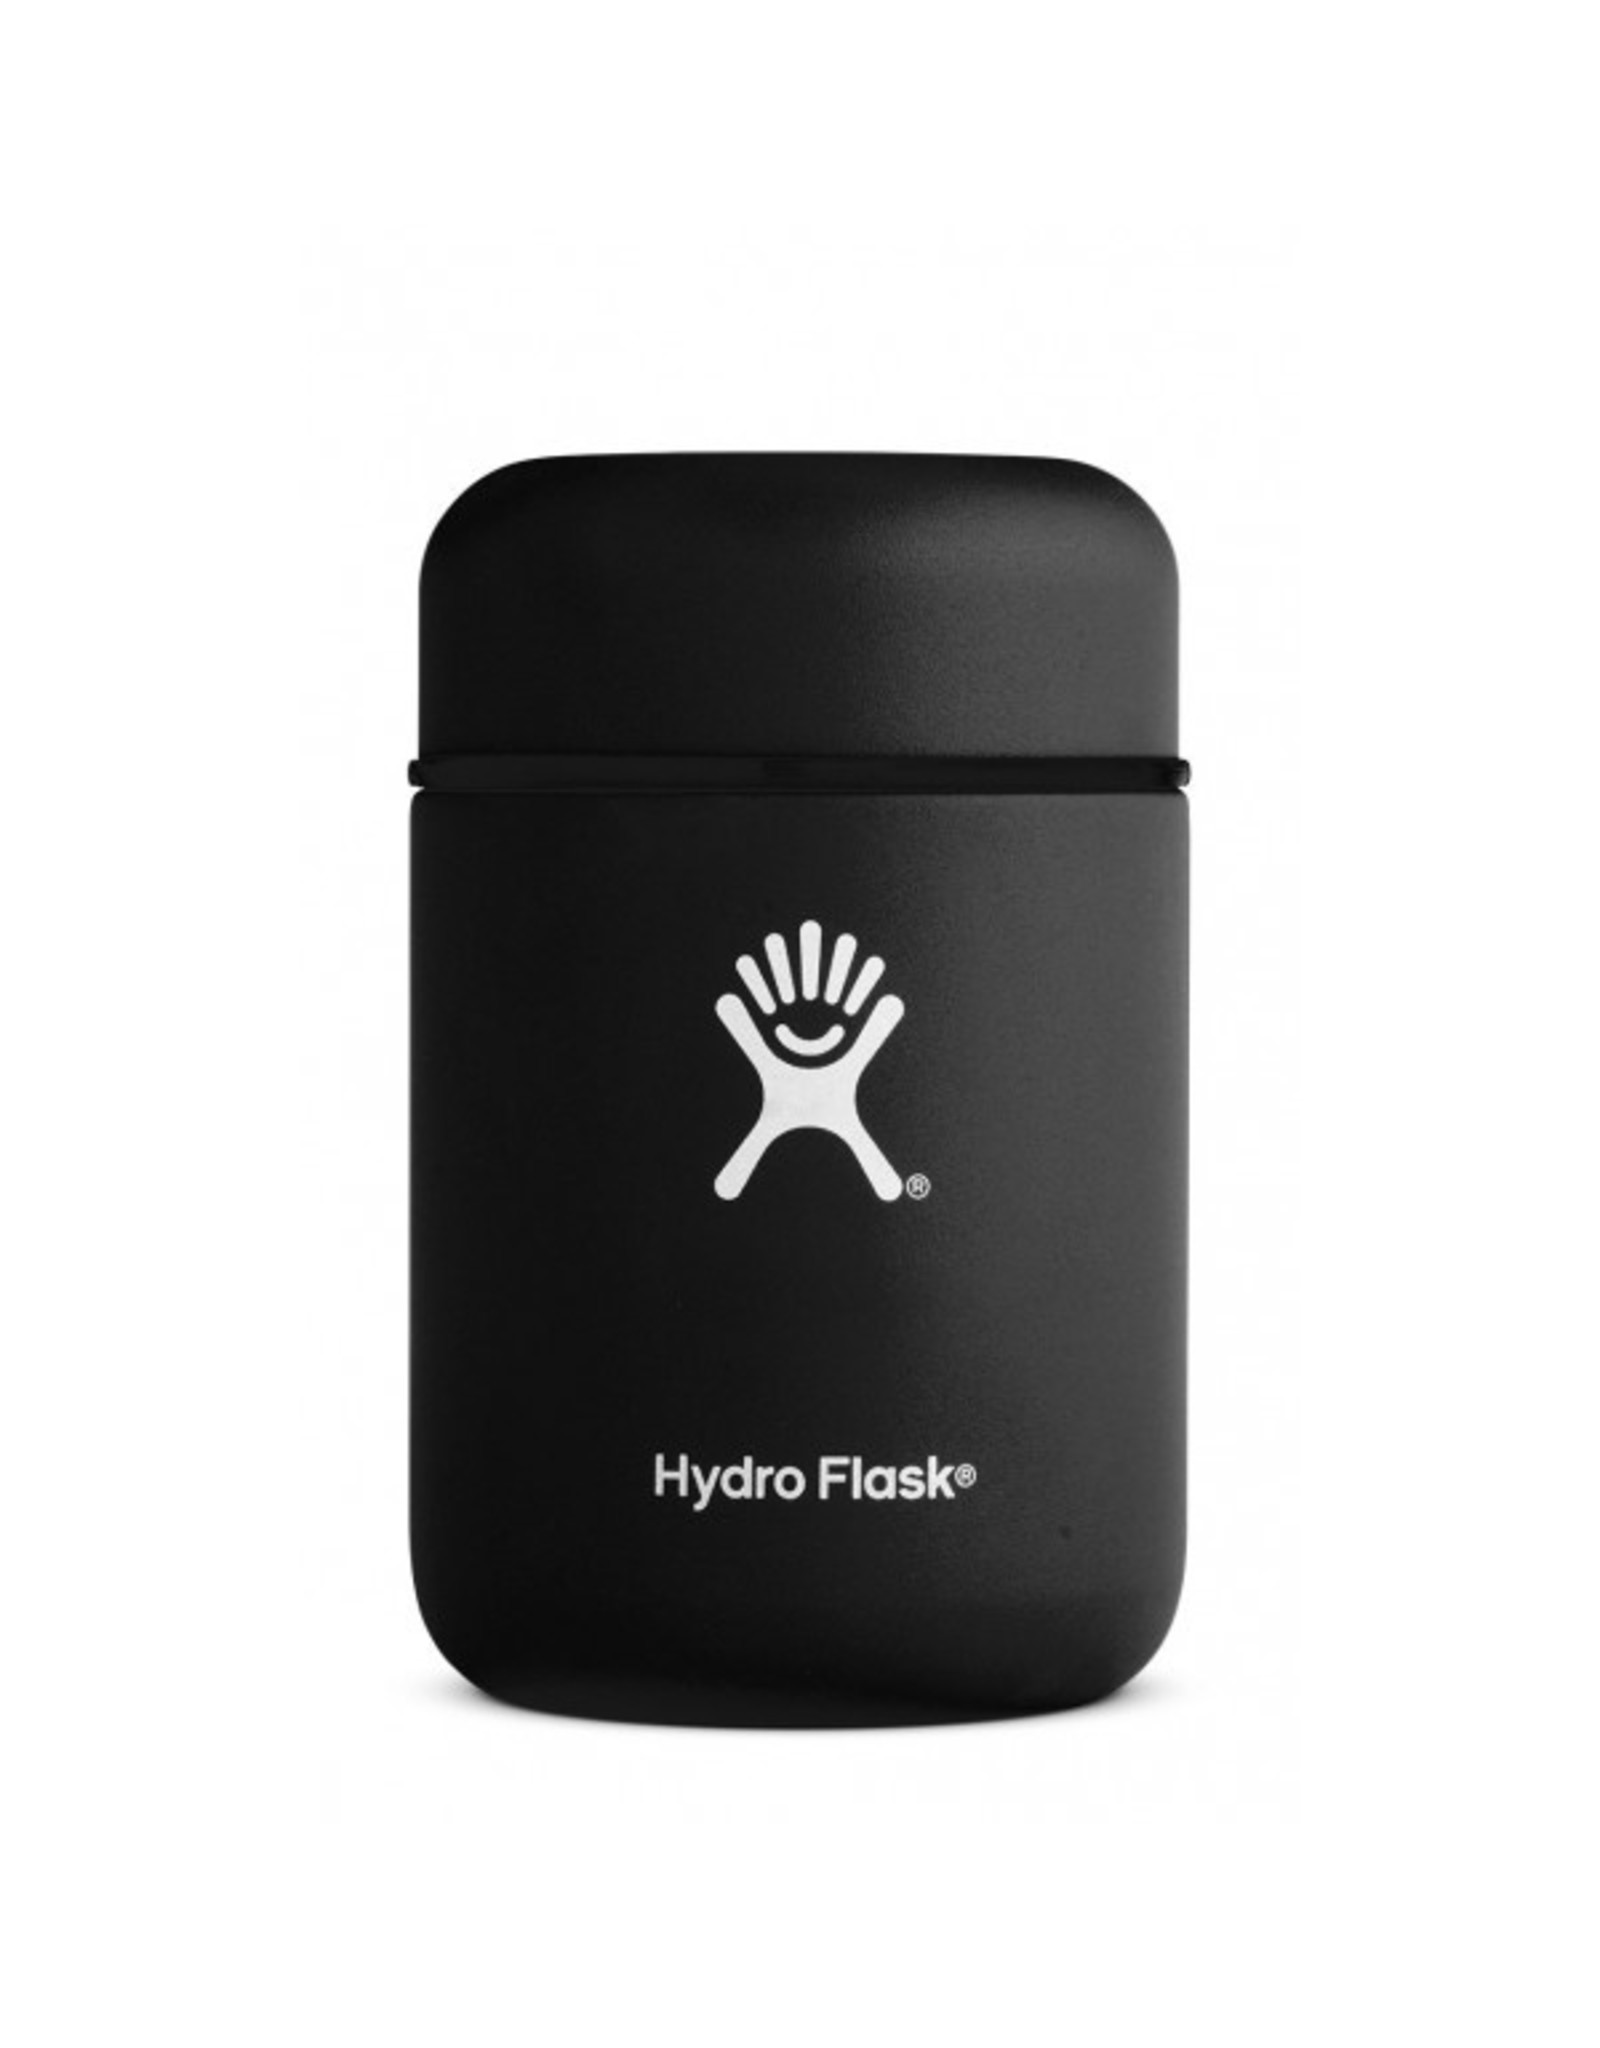 Hydro Flask 12 OZ INSULATED FOOD JAR